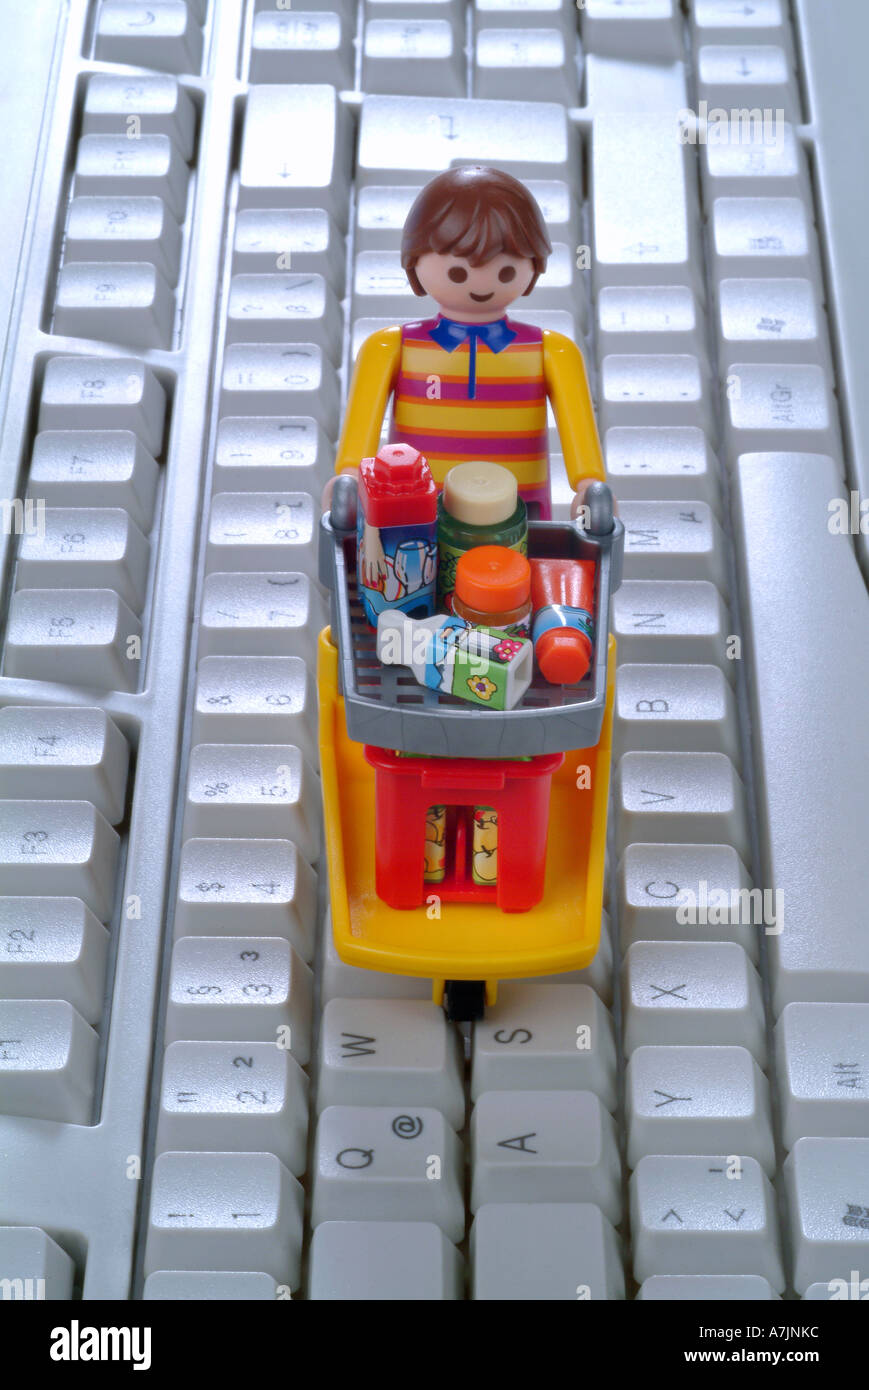 Computer keyboard and shopping trolley Tastatur mit Einkaufswagen Stock Photo